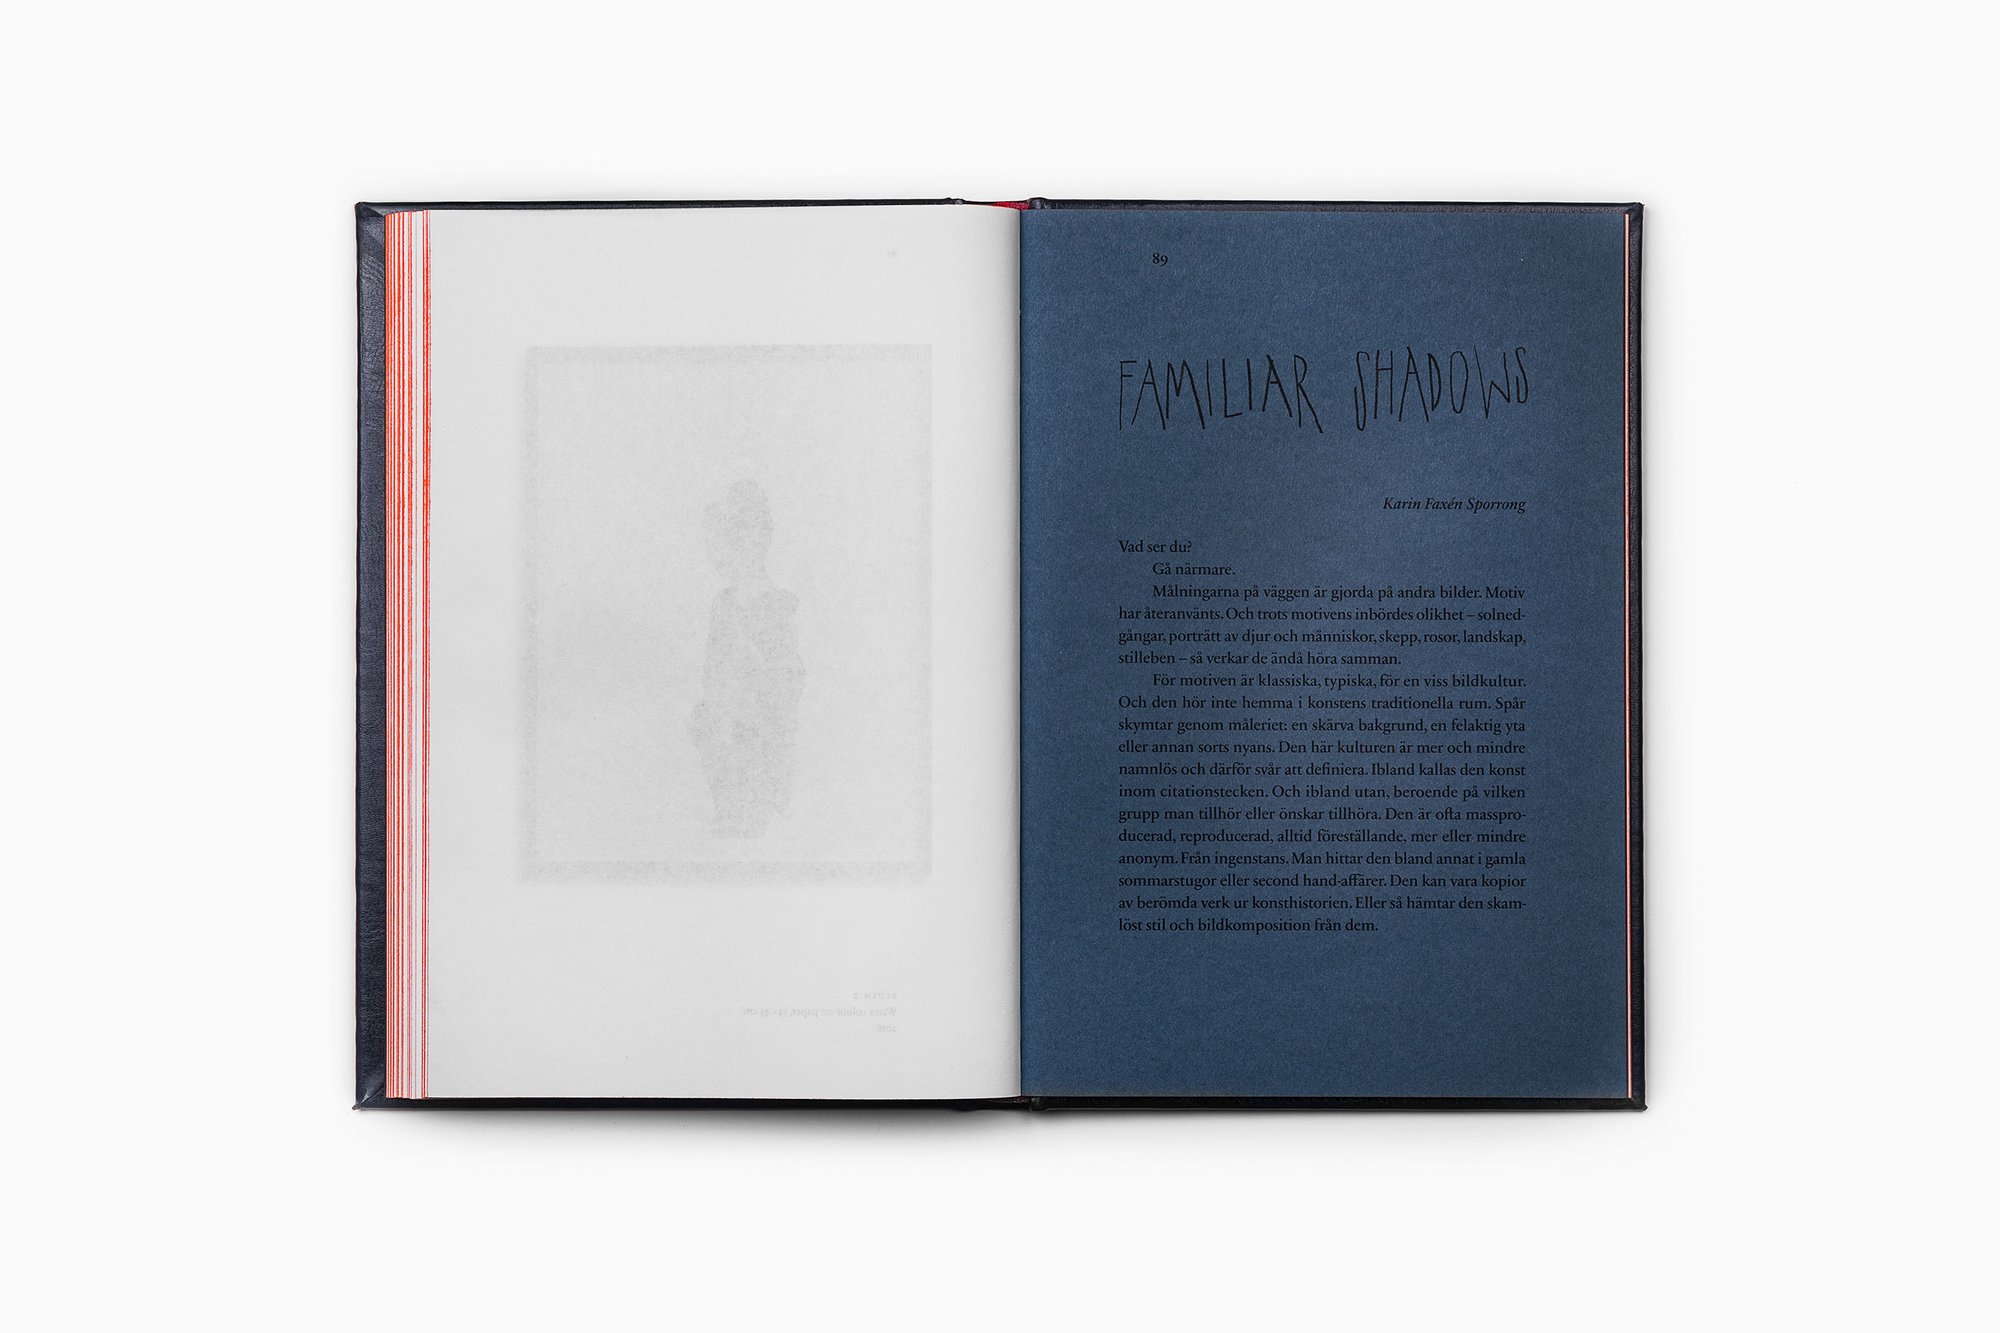 Bedow – Anna Bjerger art book